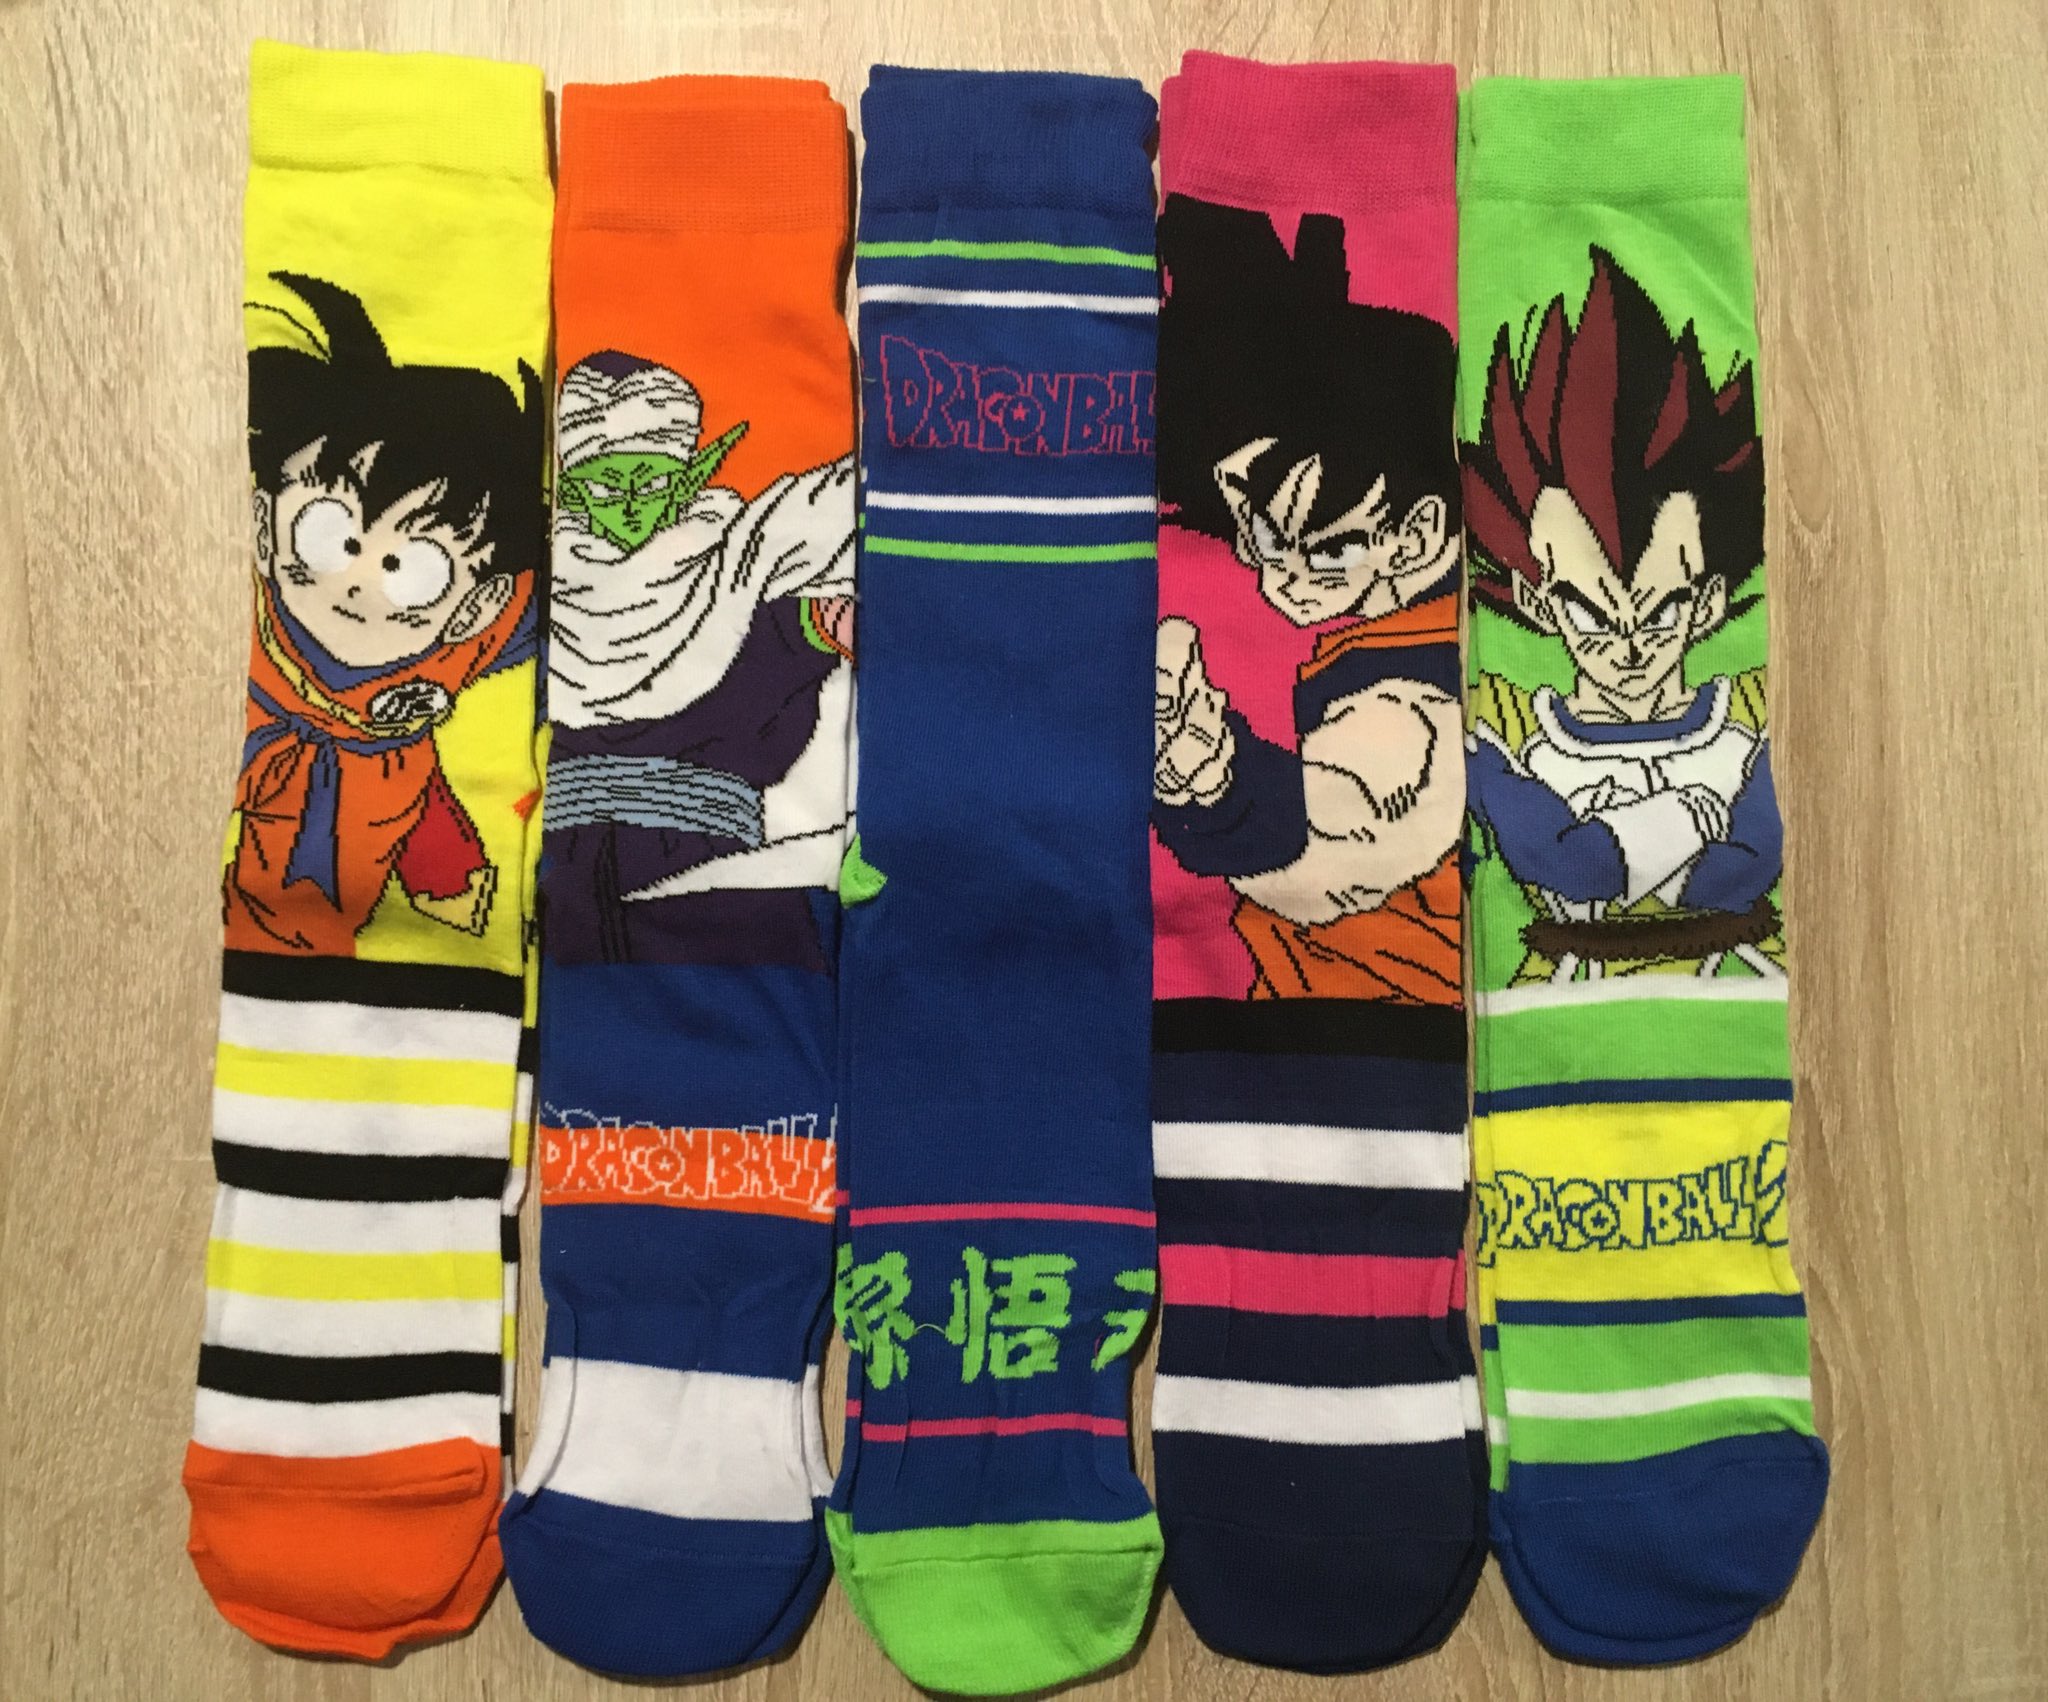 Viva Er Manga Twitter: "¡Por fin tenemos calcetines de 'Dragon Ball' en @ Primark! Además de un nuevo pijama, esta vez de verano. Se ve que en Primark se han propuesto arruinarnos...